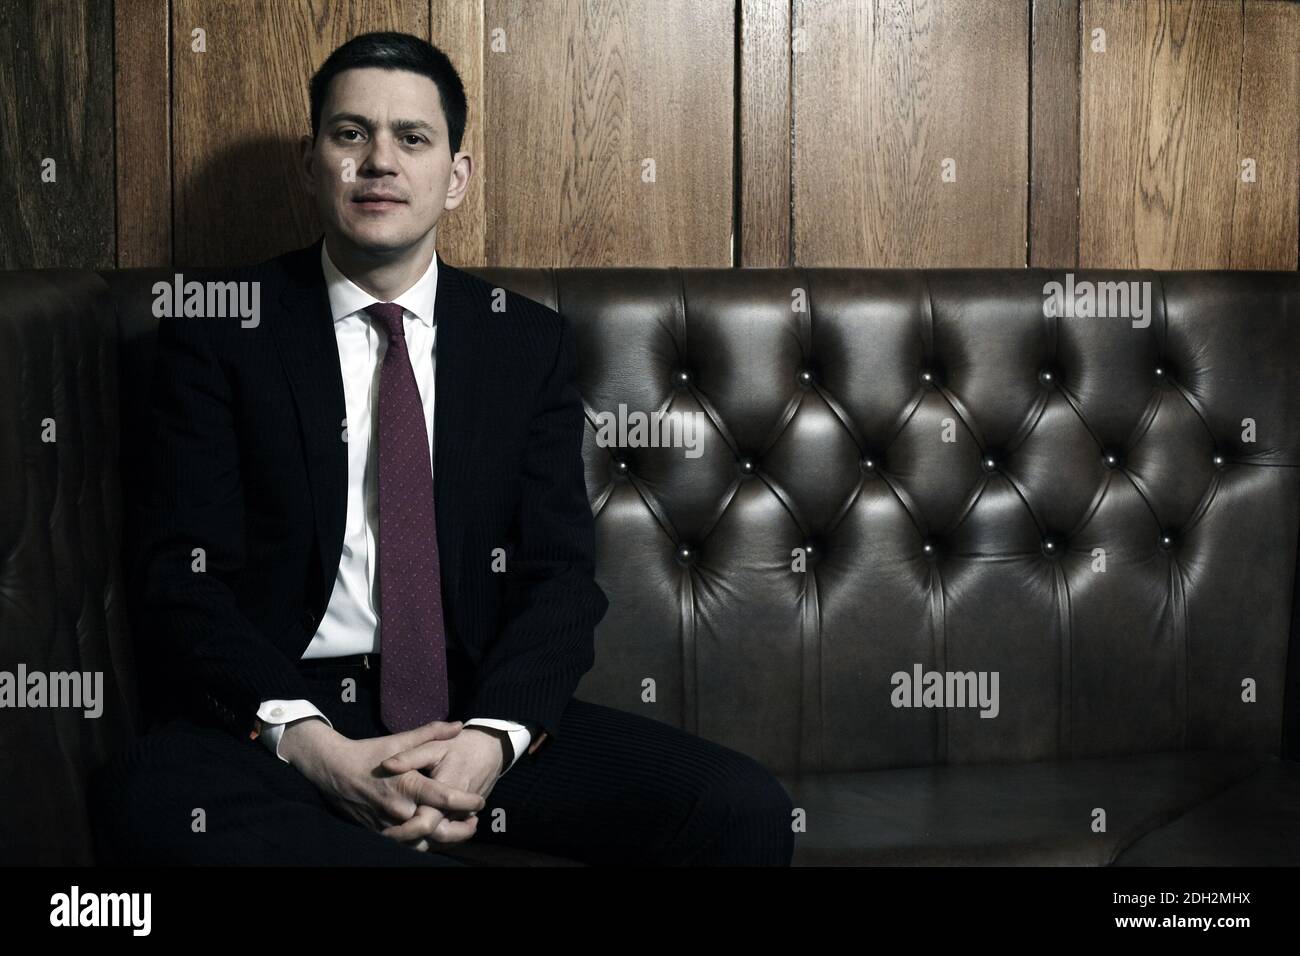 David Wright Miliband politicien du Parti travailliste britannique à Londres 6. Février 2013, Angleterre Banque D'Images